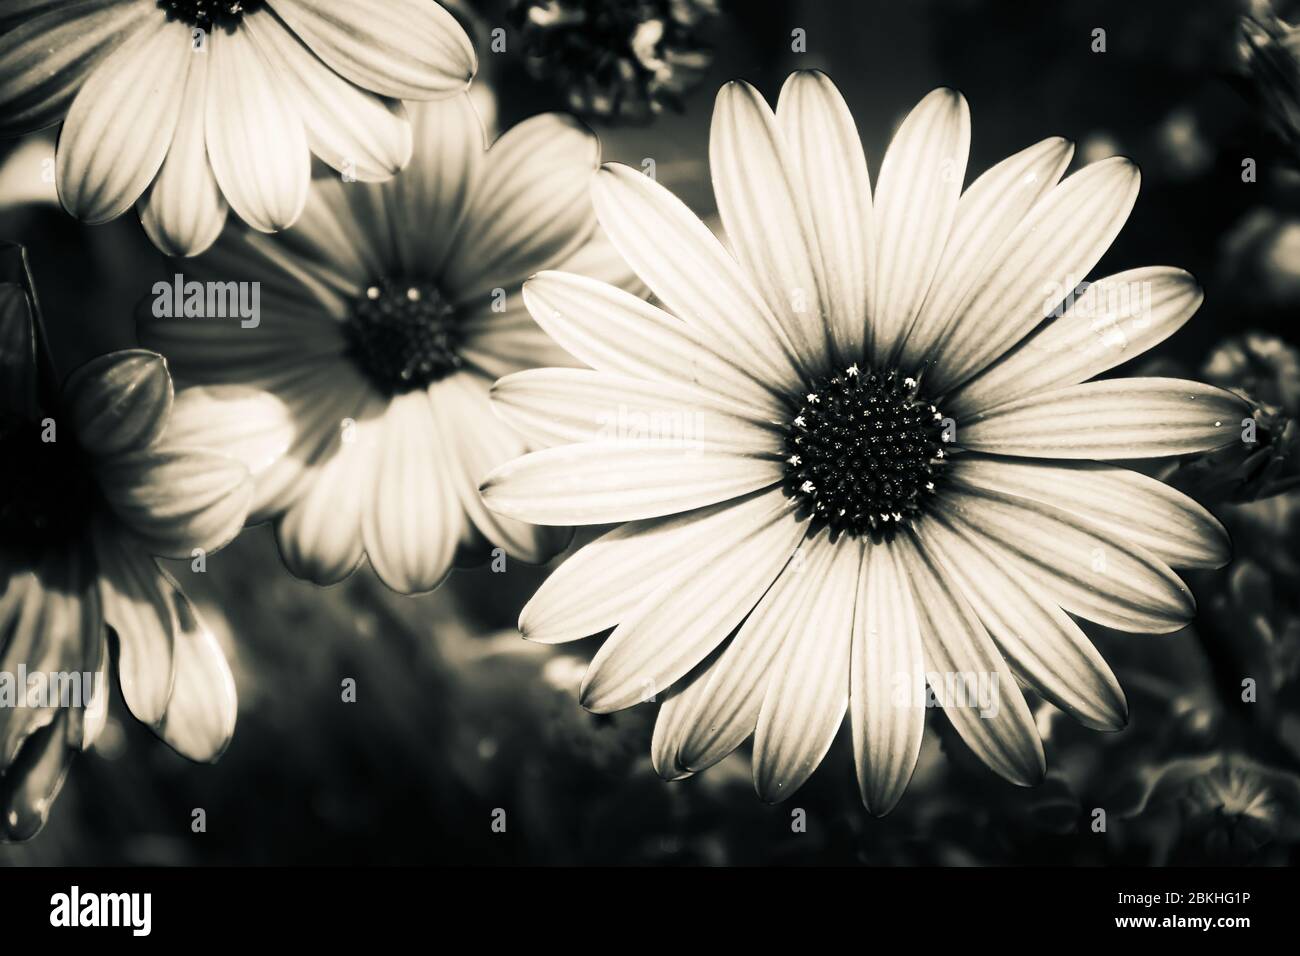 Immagine in bianco e nero di un fiore adatta come immagine di sfondo desaturata. Foto Stock